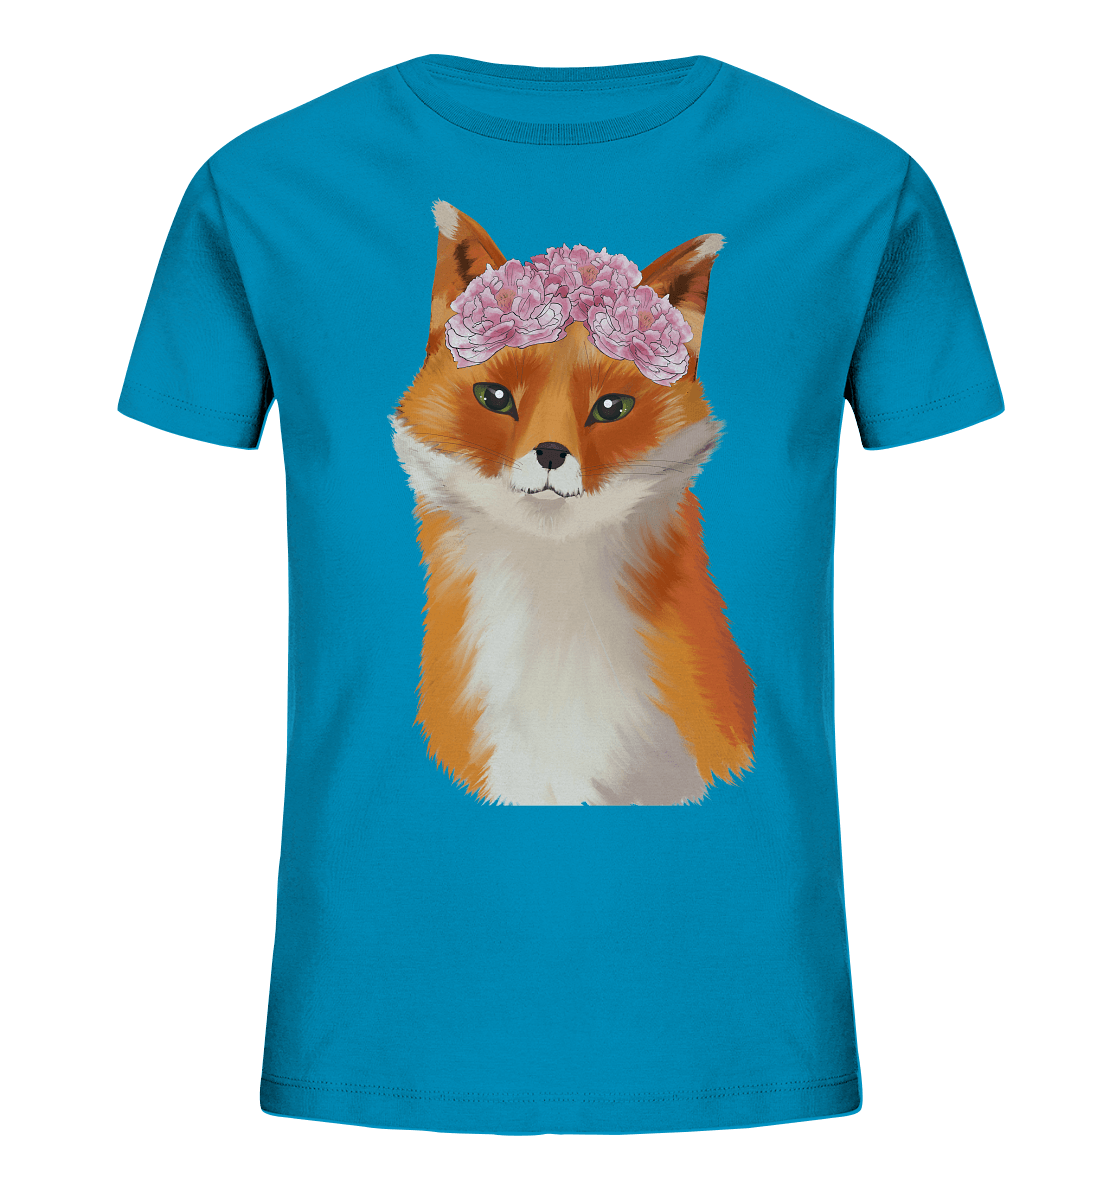 Fuchs Kinder T-Shirt "Fuchs mit Blumen" in blau